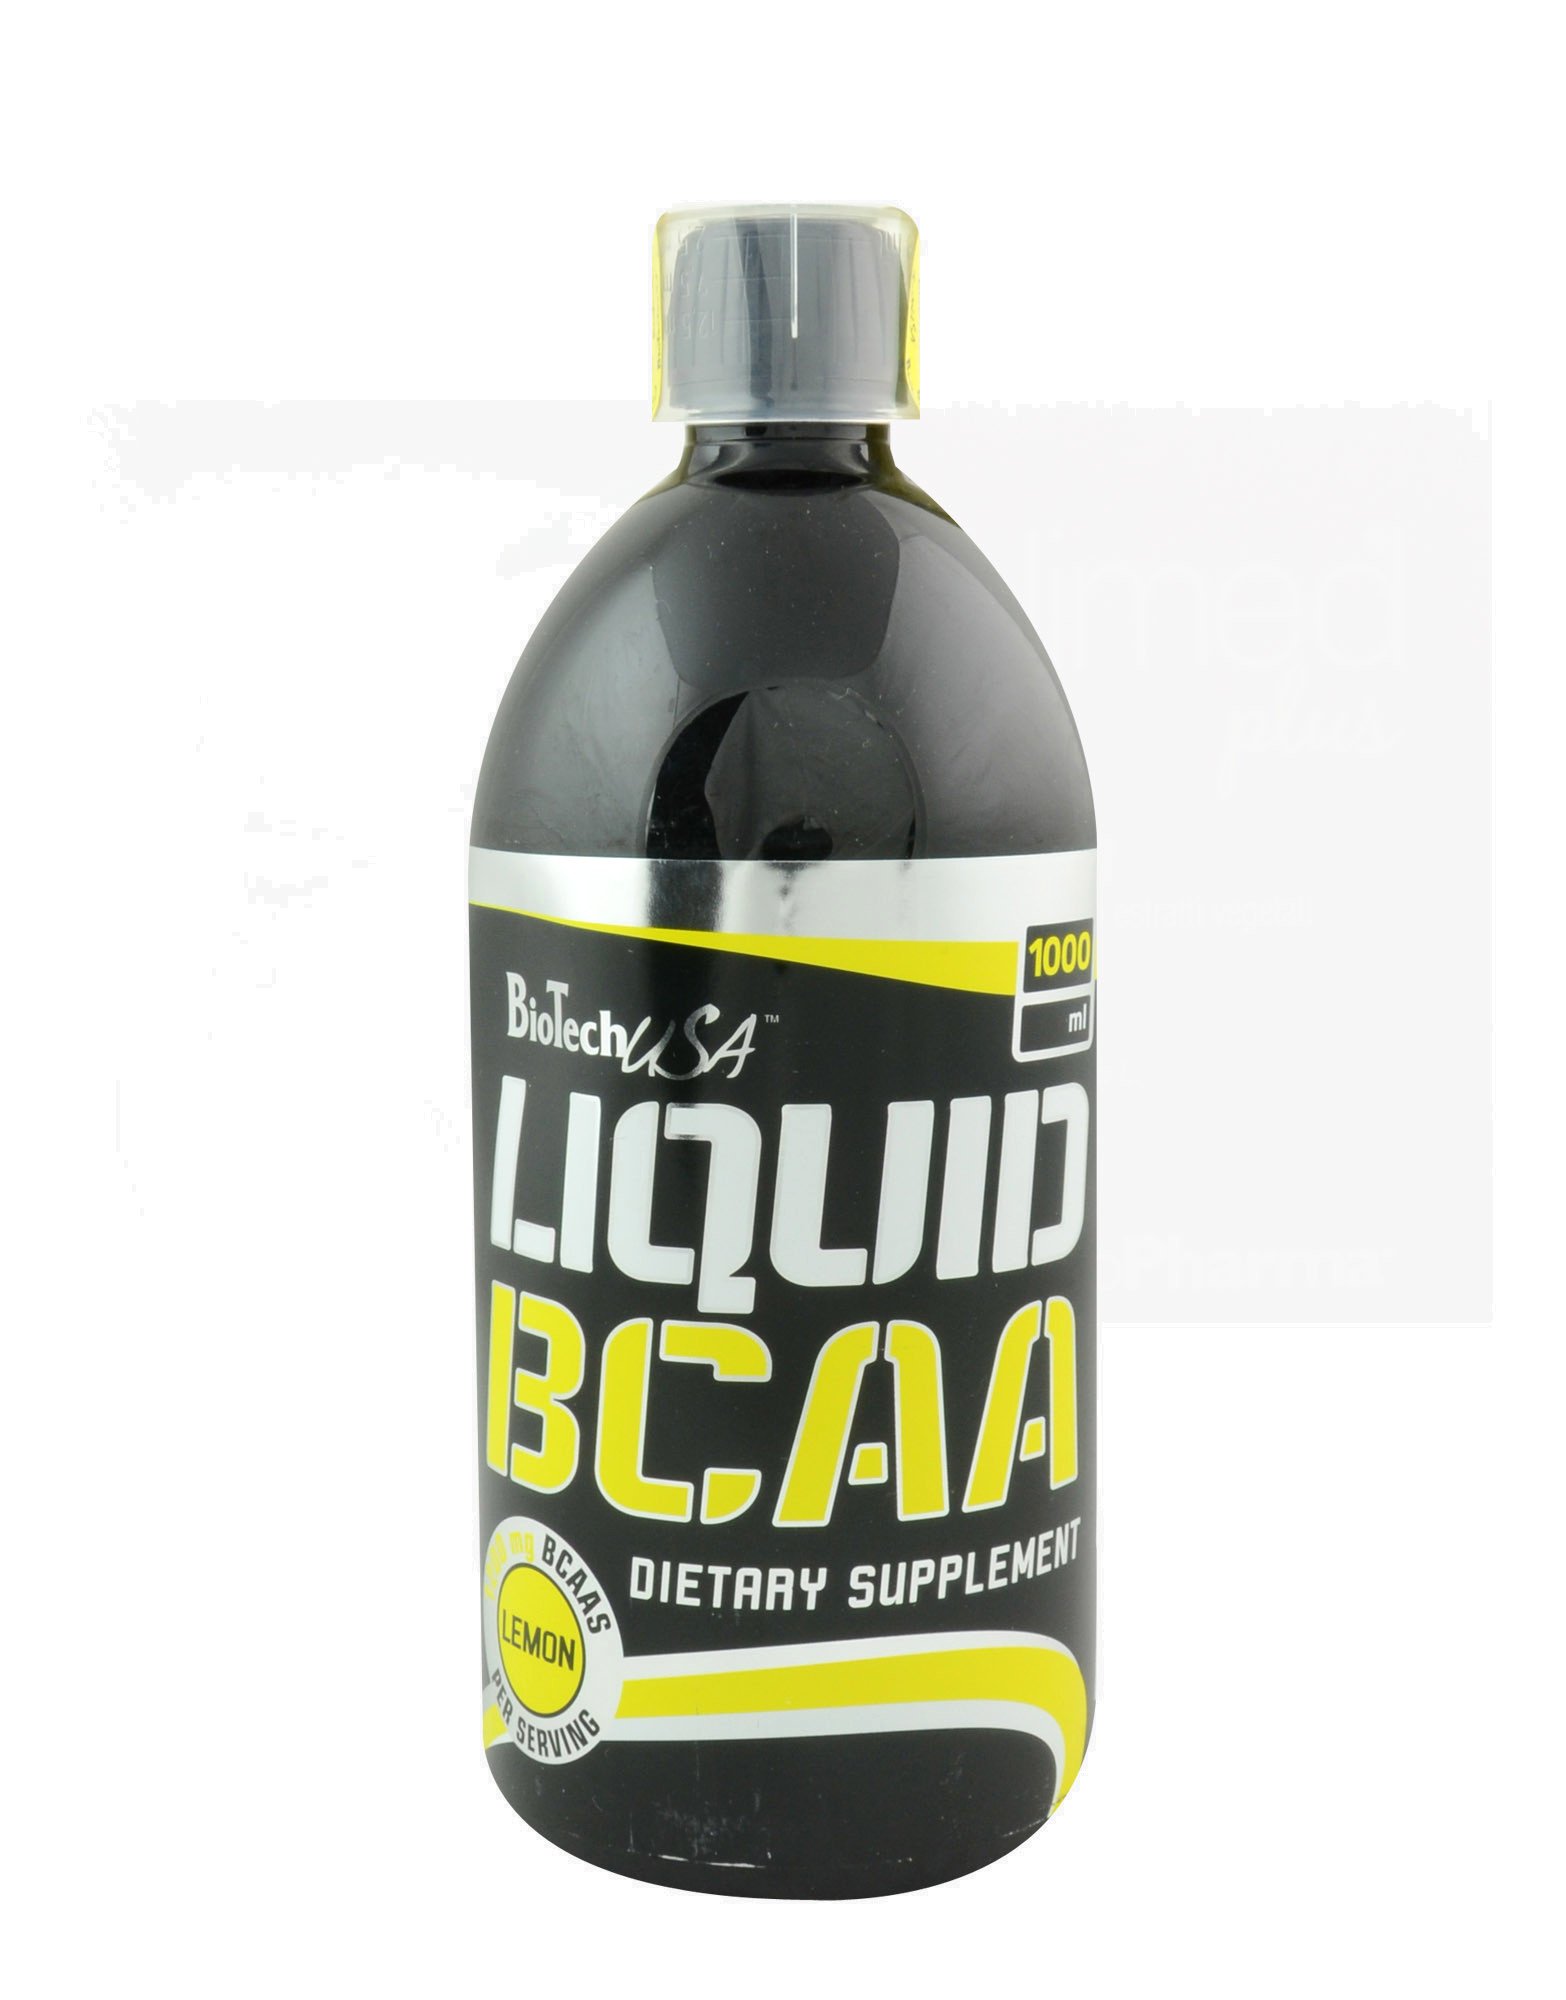 BioTech Liquid BСАА, , 1000 ml